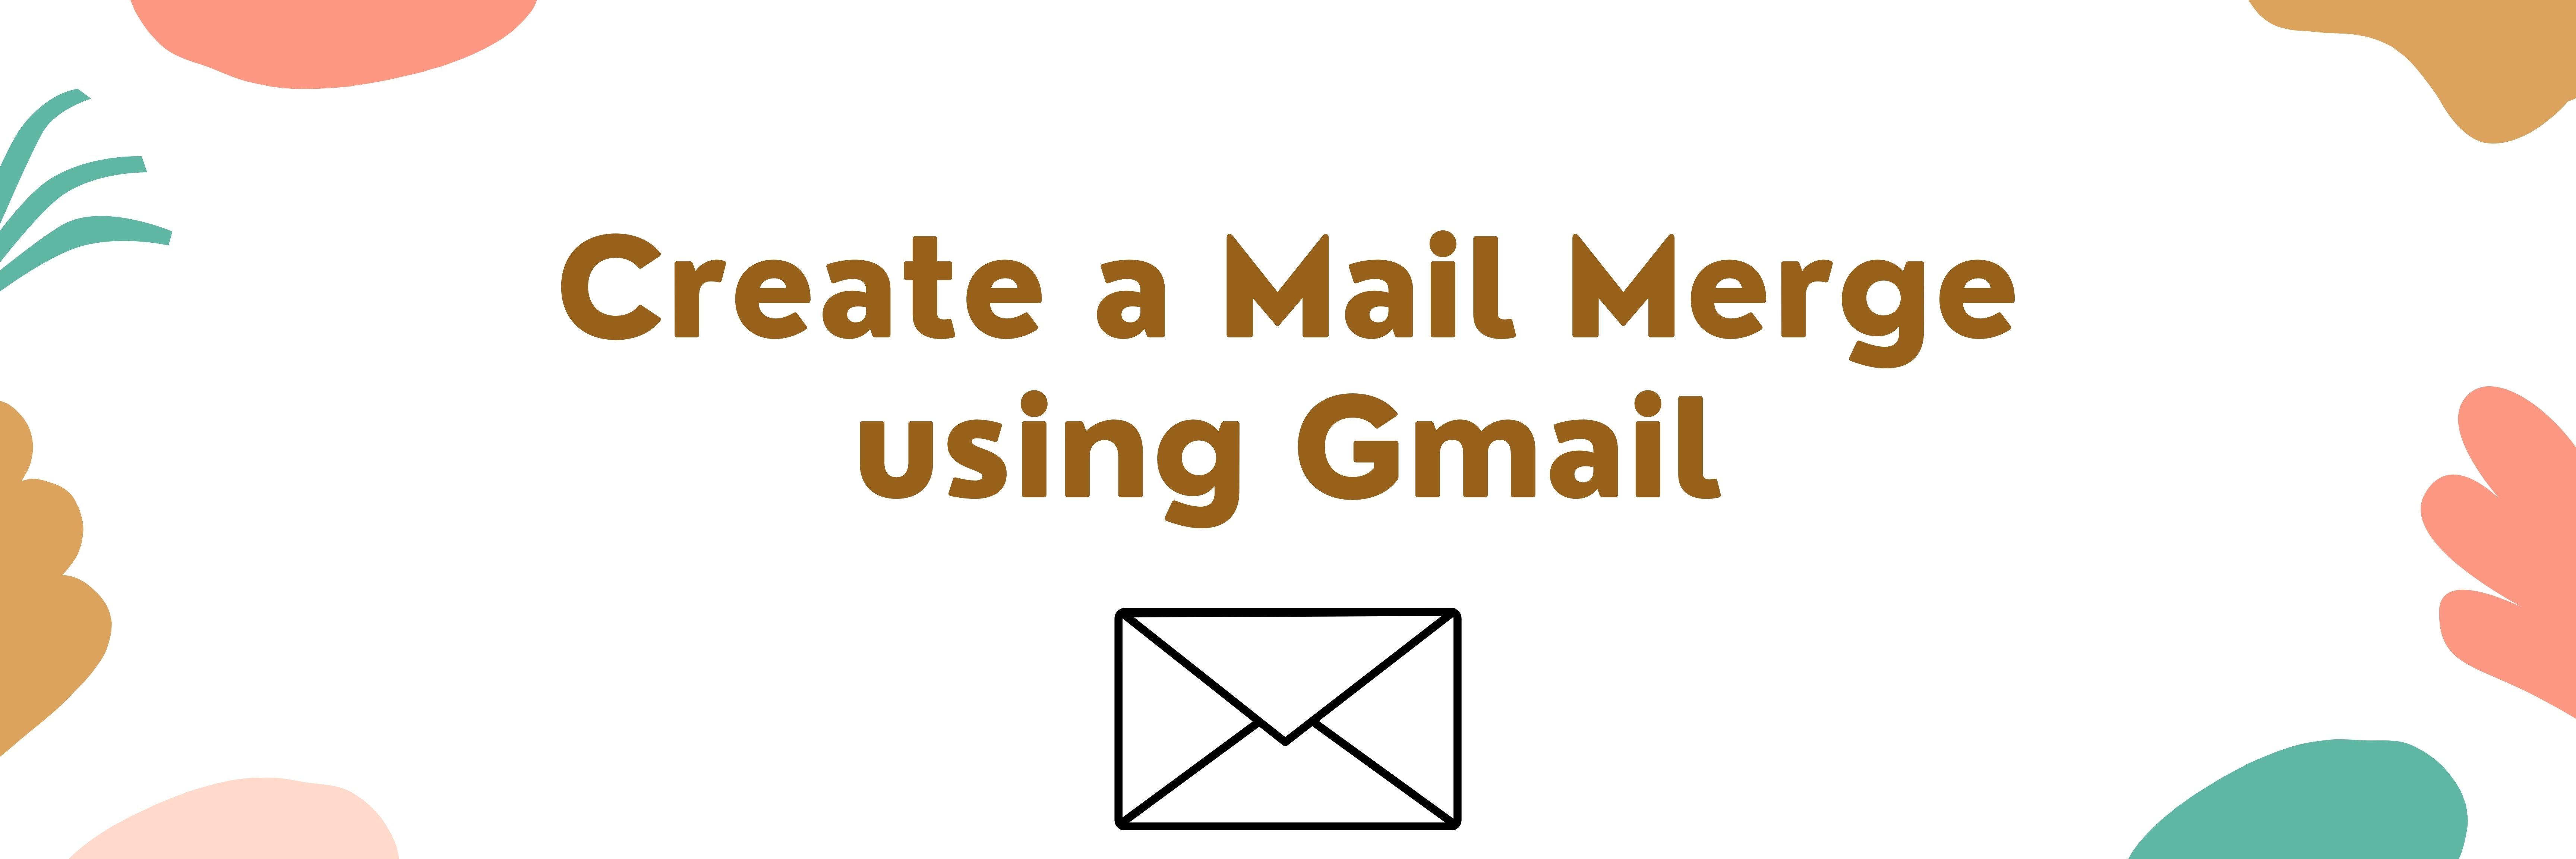 mail merge gmail